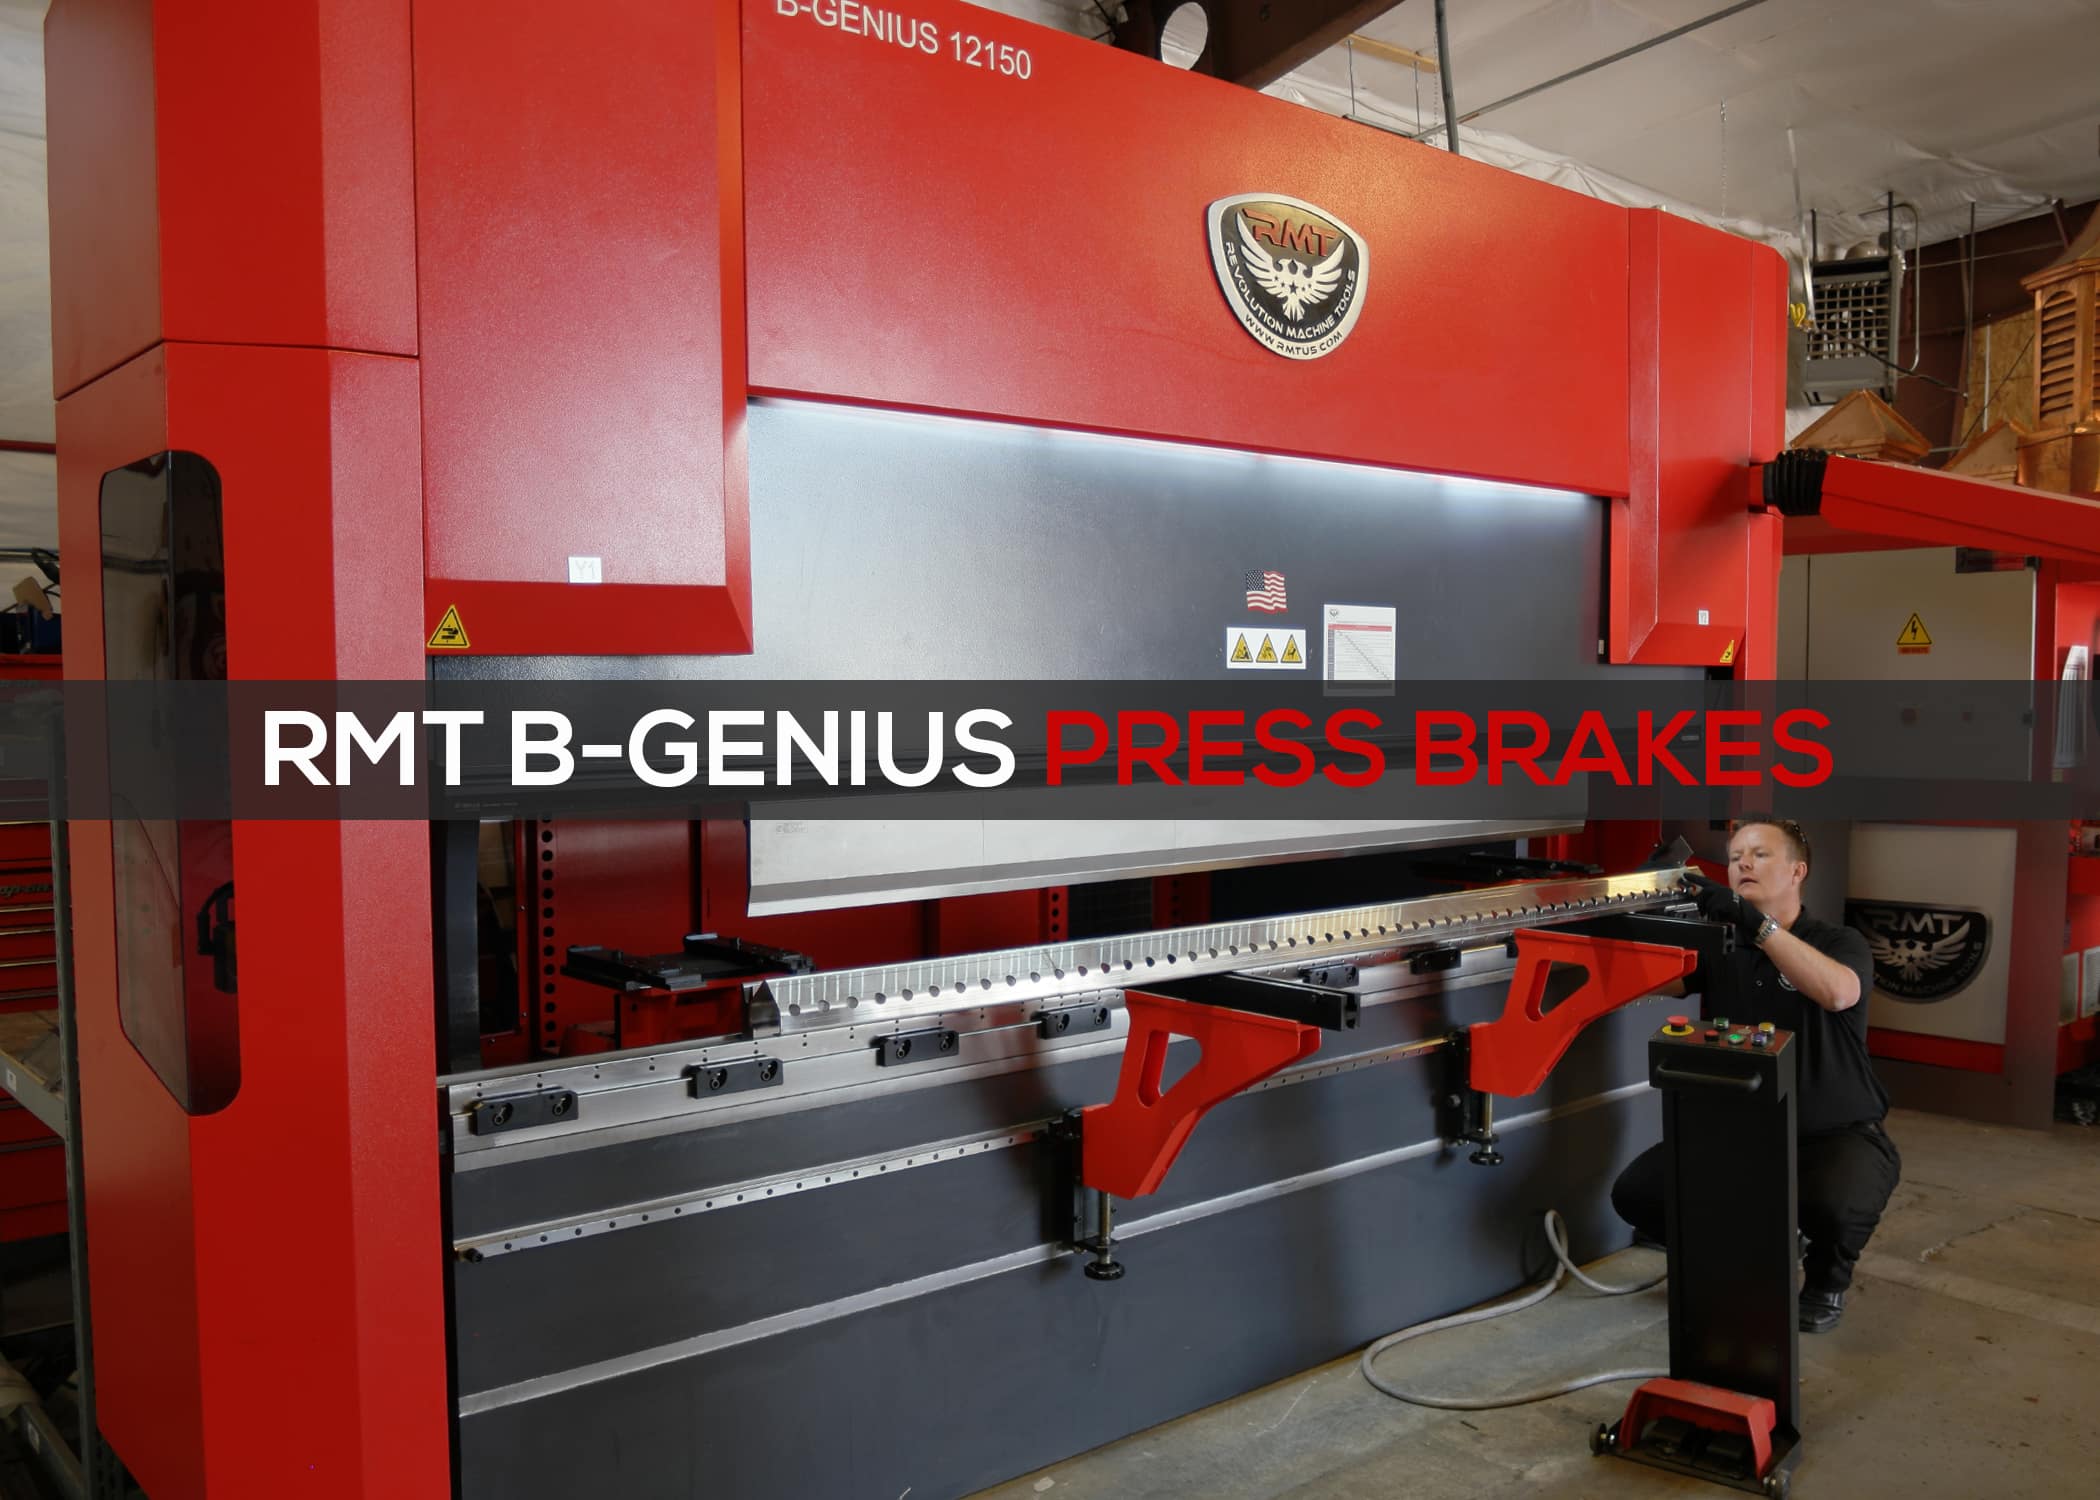 B-GENIUS Press Brakes Featured